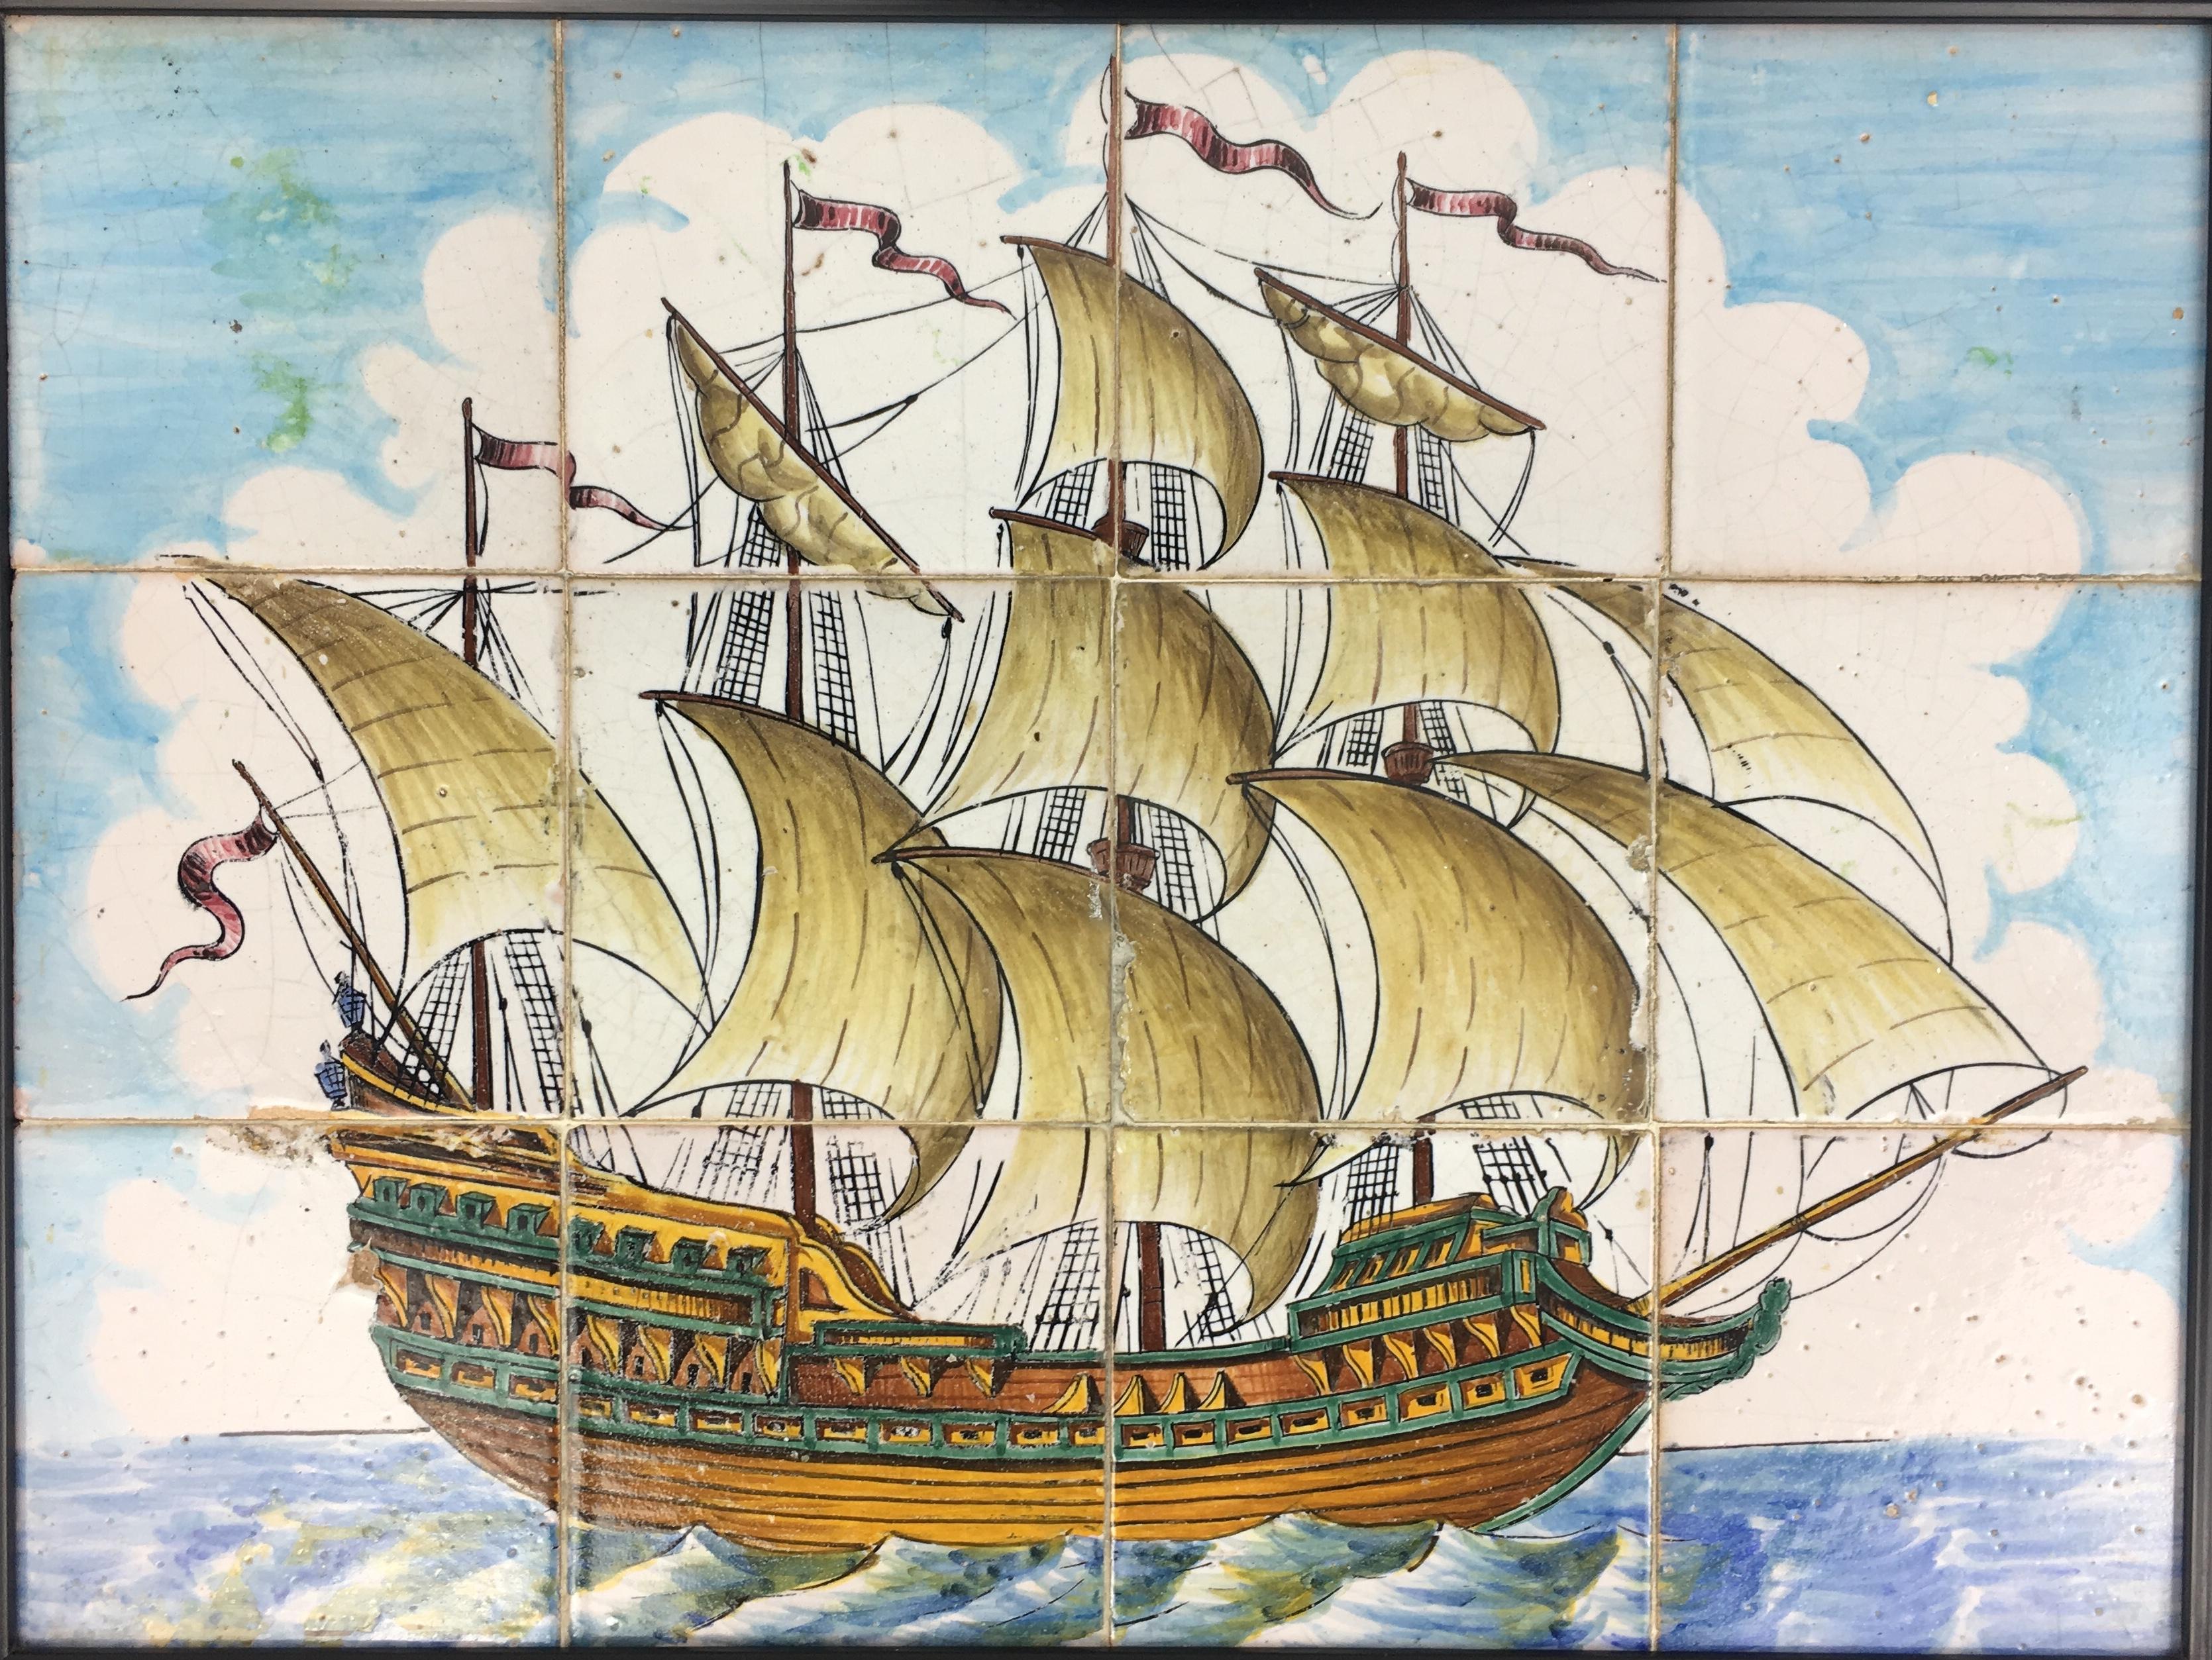 Tenture murale portugaise en azulejos du XVIIIe siècle représentant un voilier sur la mer, dans diverses nuances de bleu, de beige et d'autres couleurs accentuées. Des détails étonnants avec des couleurs bleu, blanc, moutarde, vert naturel et jaune